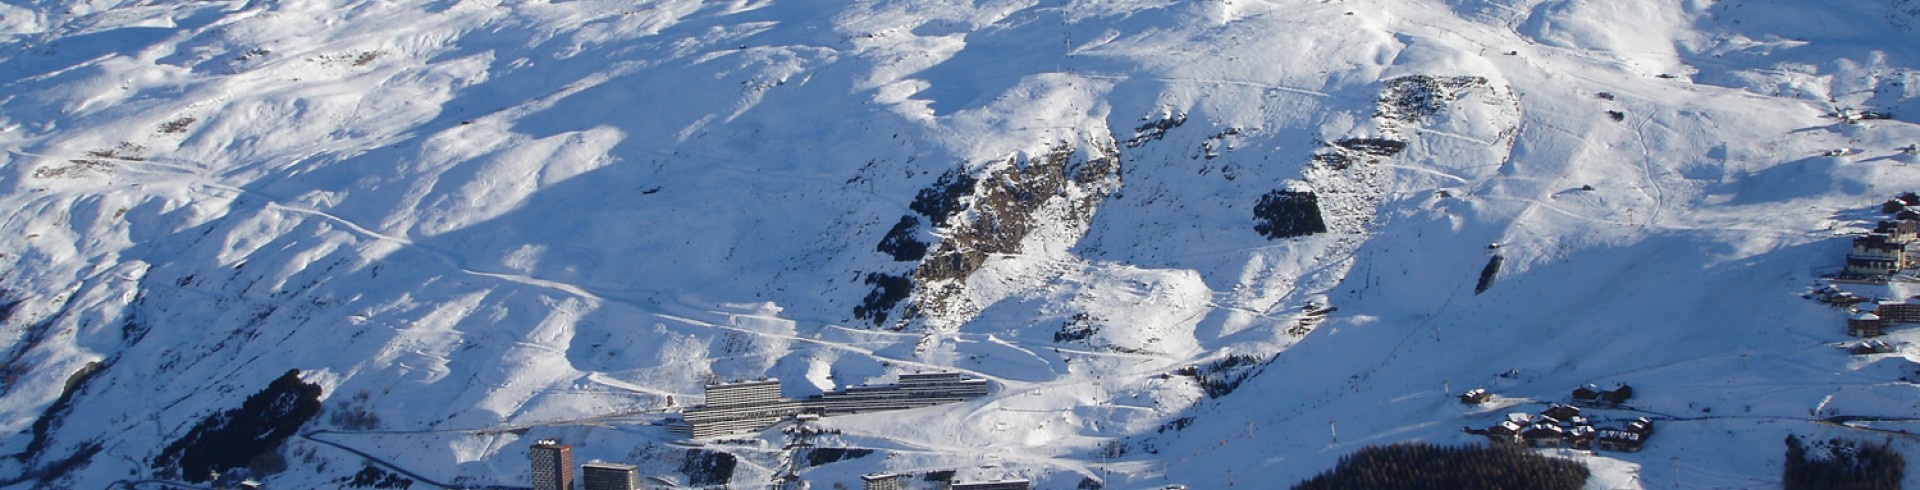 Station de ski des Ménuires